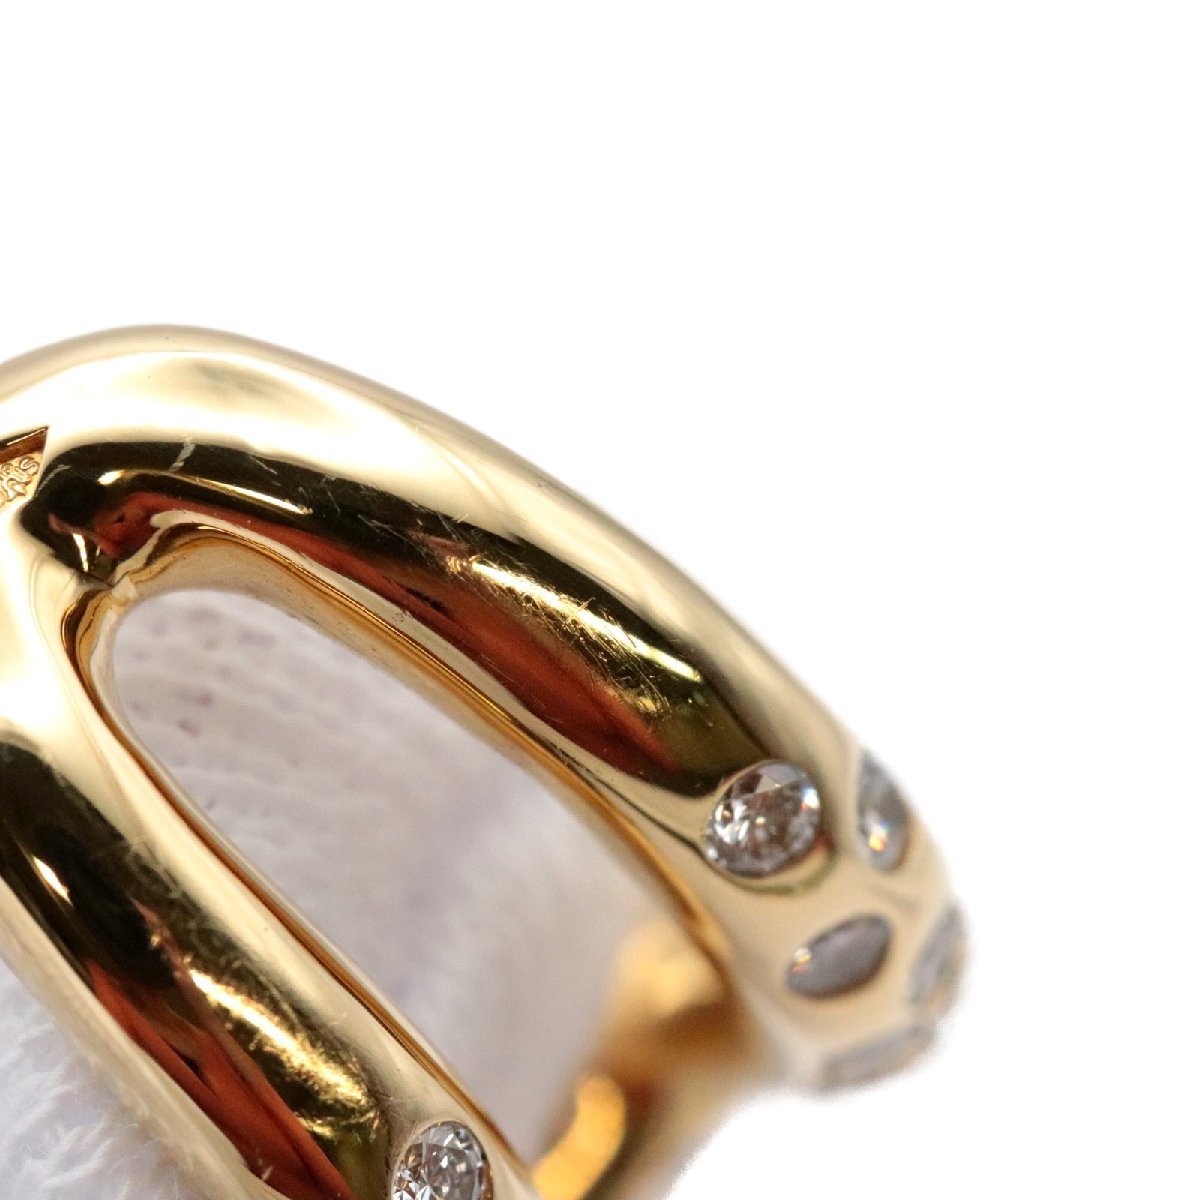  прекрасный товар Hermes oz mozPM кольцо #50 10 номер бриллиант Au750 K18YG желтое золото женский кольцо ювелирные изделия HERMES